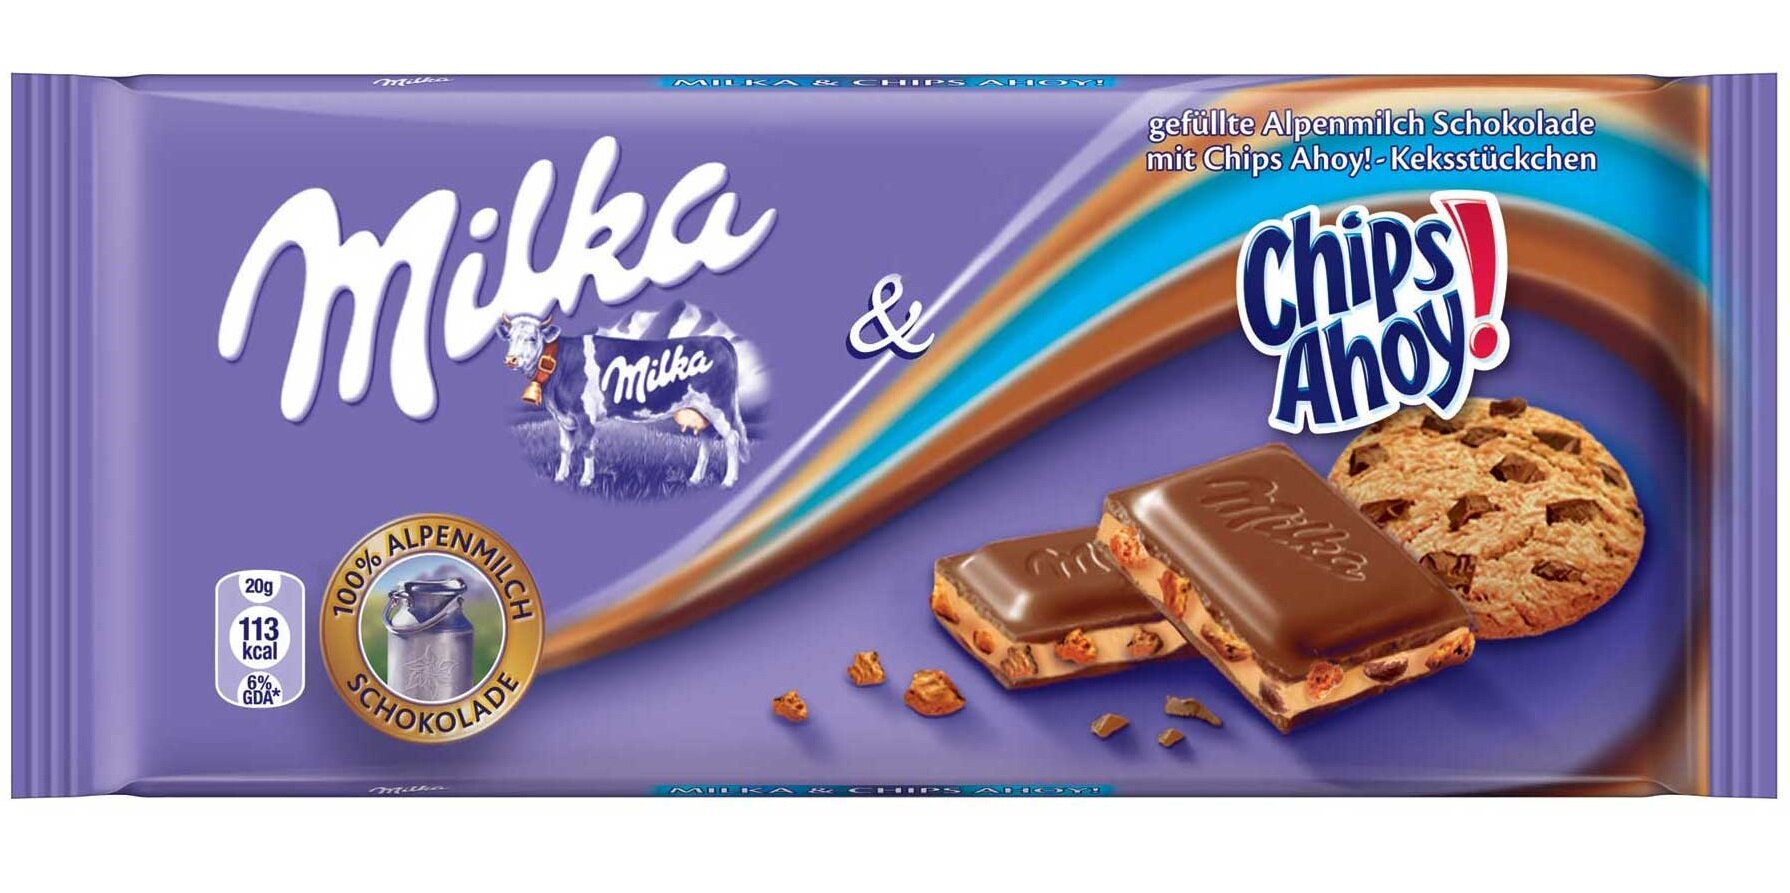 Шоколадная плитка Milka Chips Ahoy / Милка Чипс Ахой 100 г. (Германия)